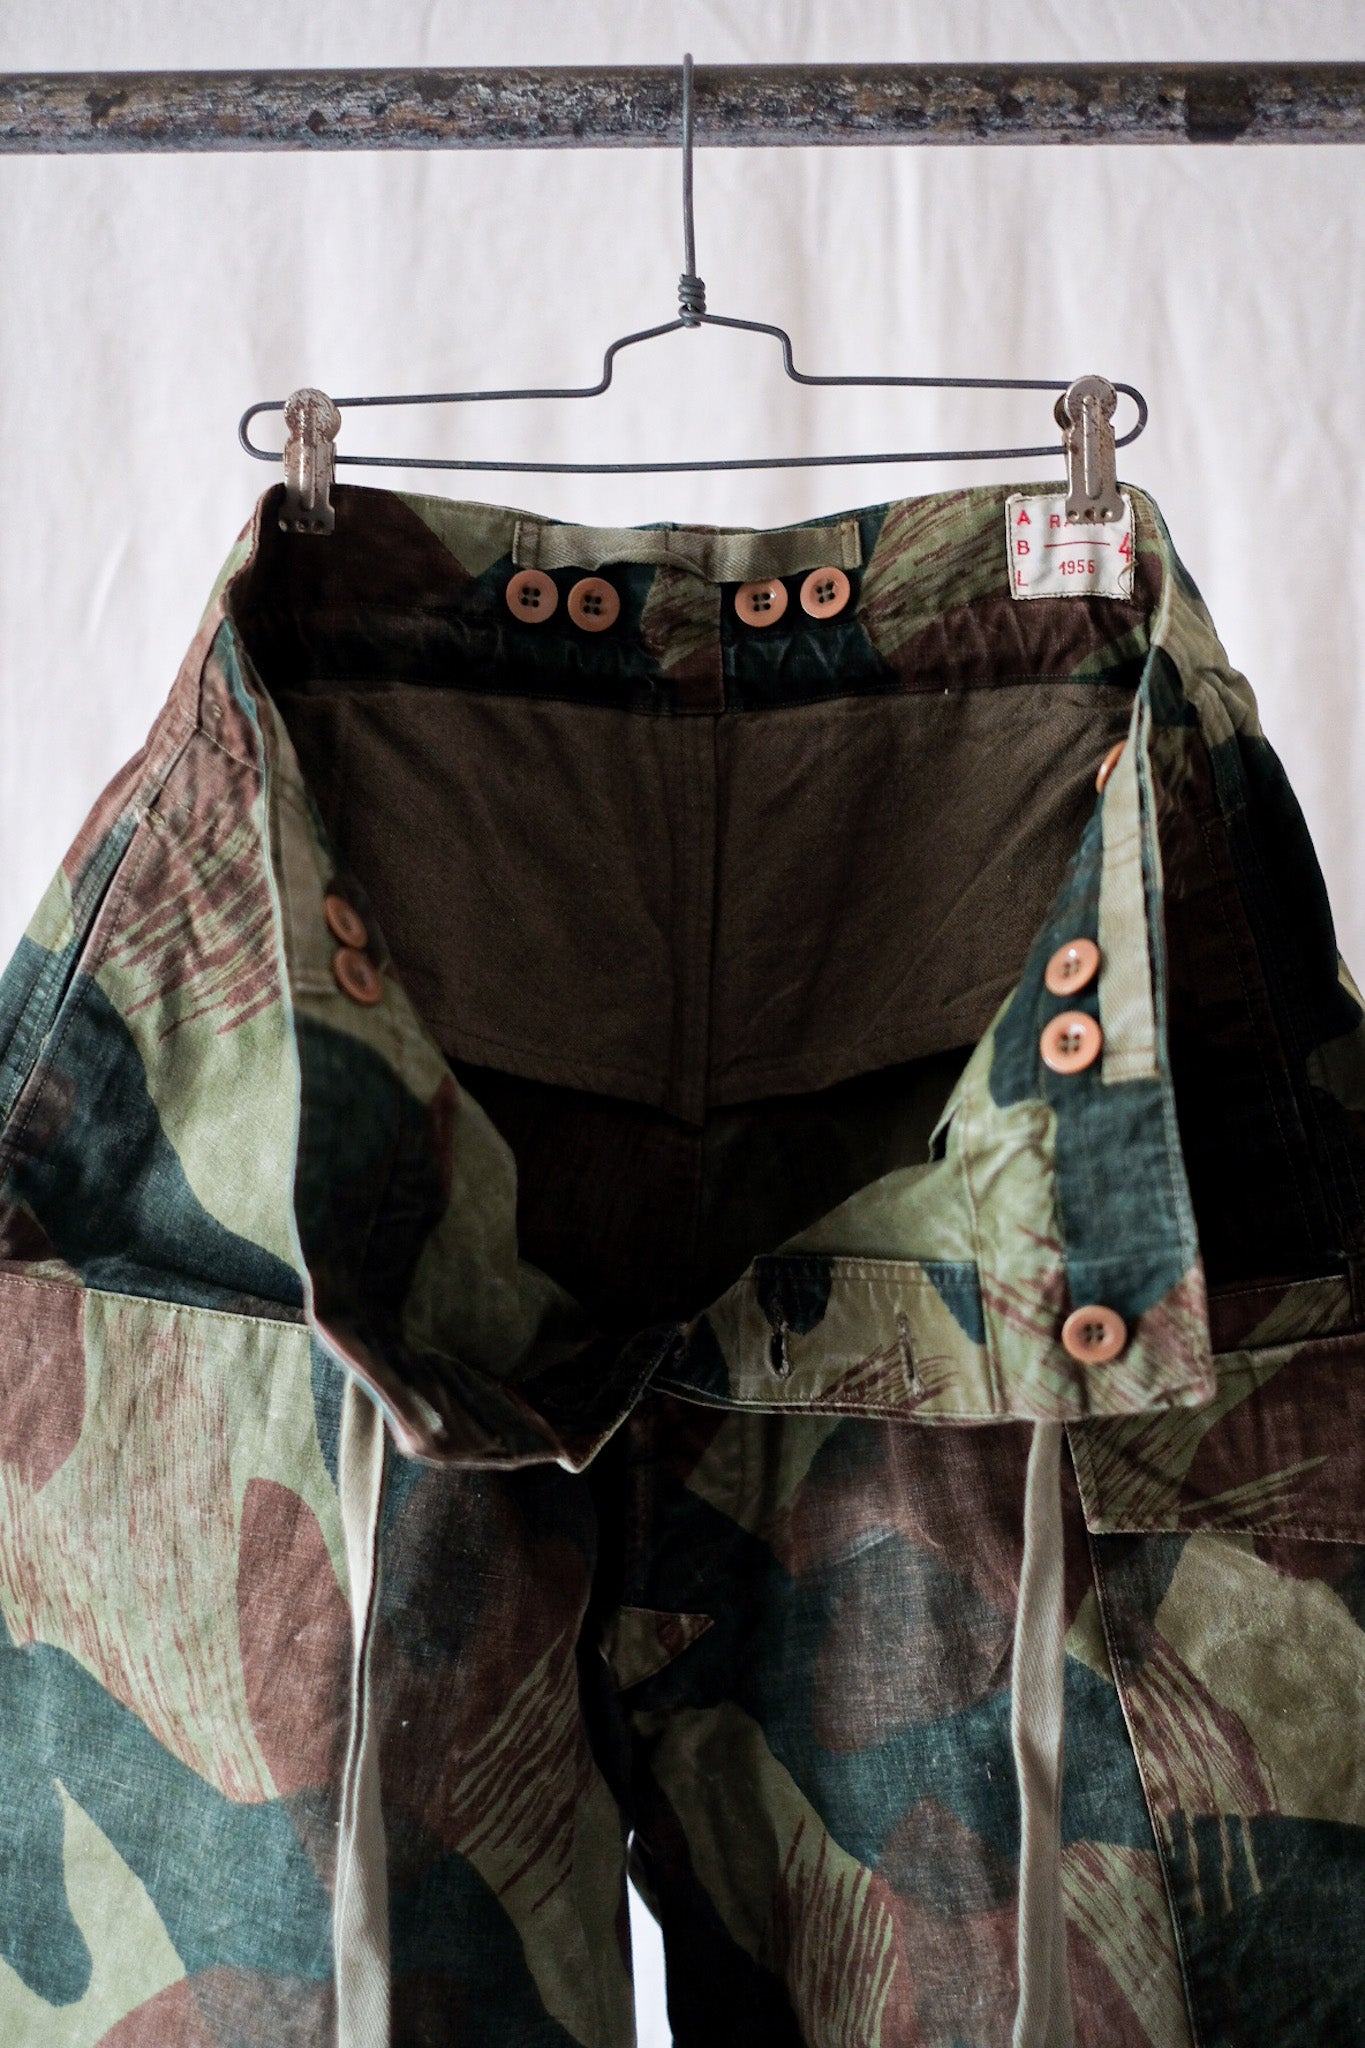 [〜50年代]比利時陸軍筆觸迷彩褲子大小。4